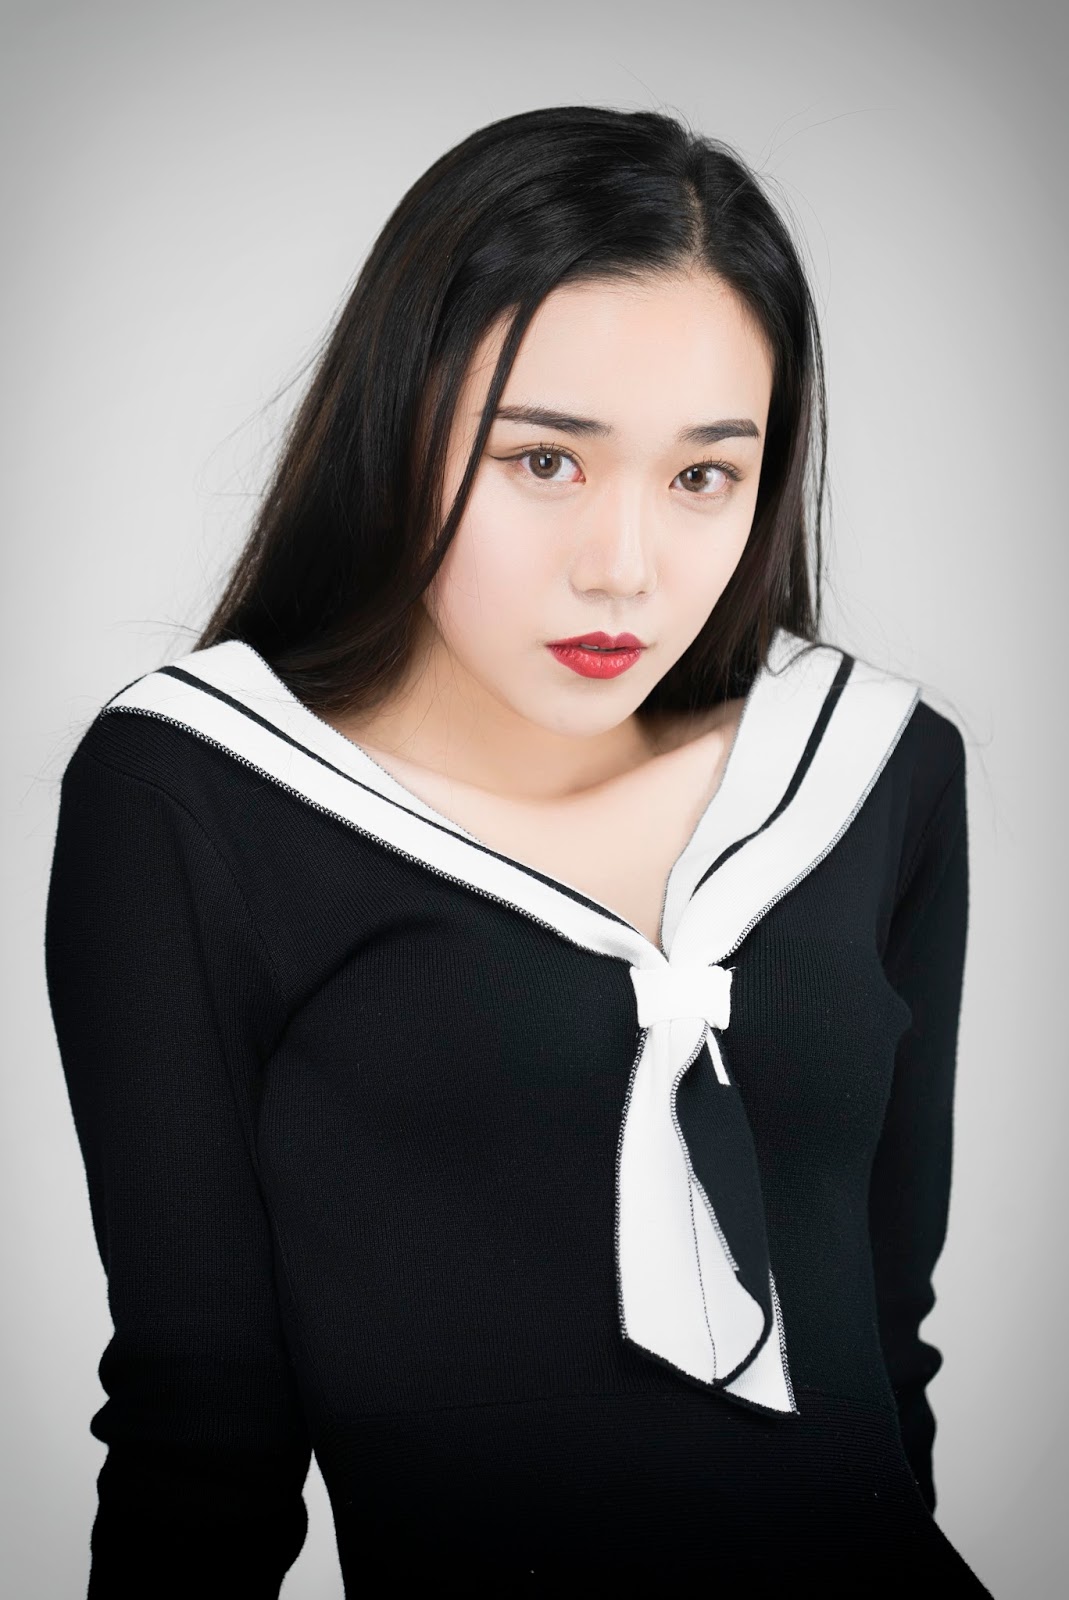 Korean Model Da Bi in Photo Album Feb 2017 - Asian Beauty Image